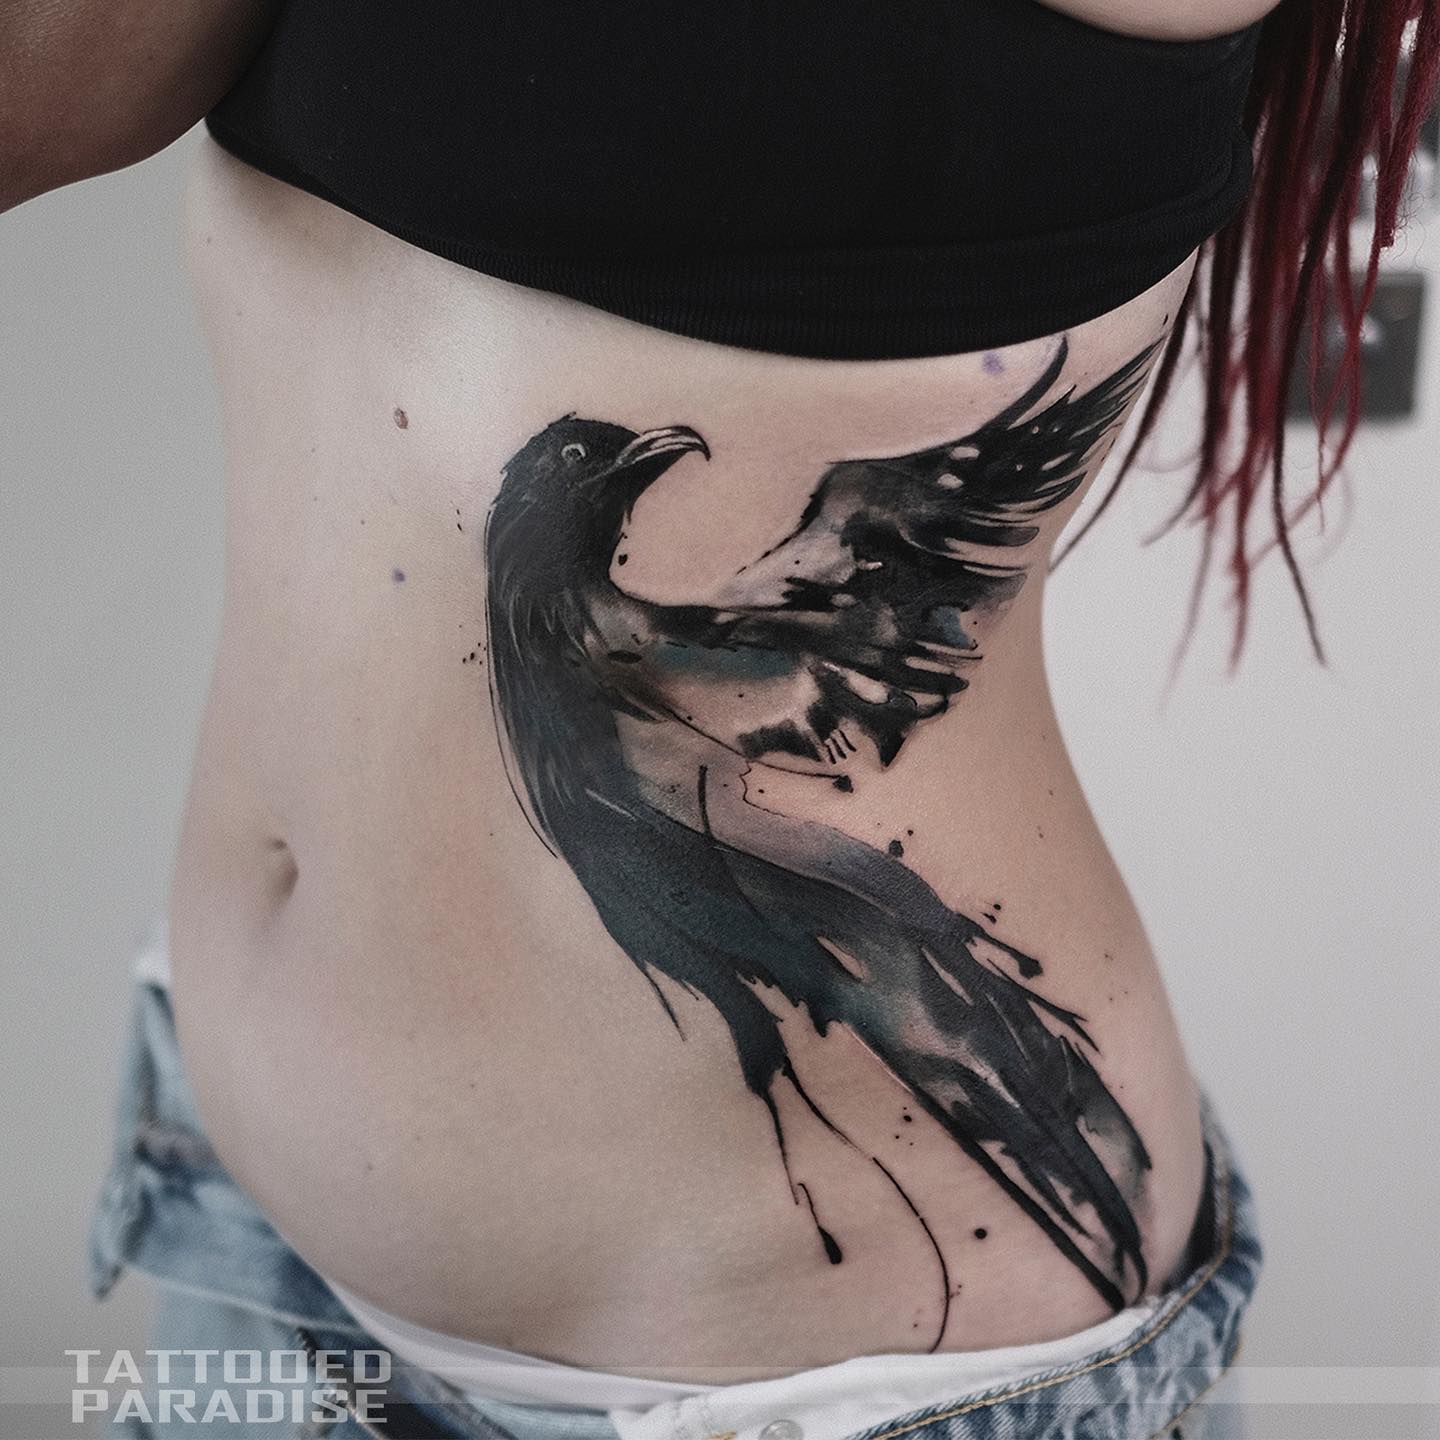 Akwarelowy tatuaż przedstawiający kruka nordyckiego wykonany czarno-białymi tuszami